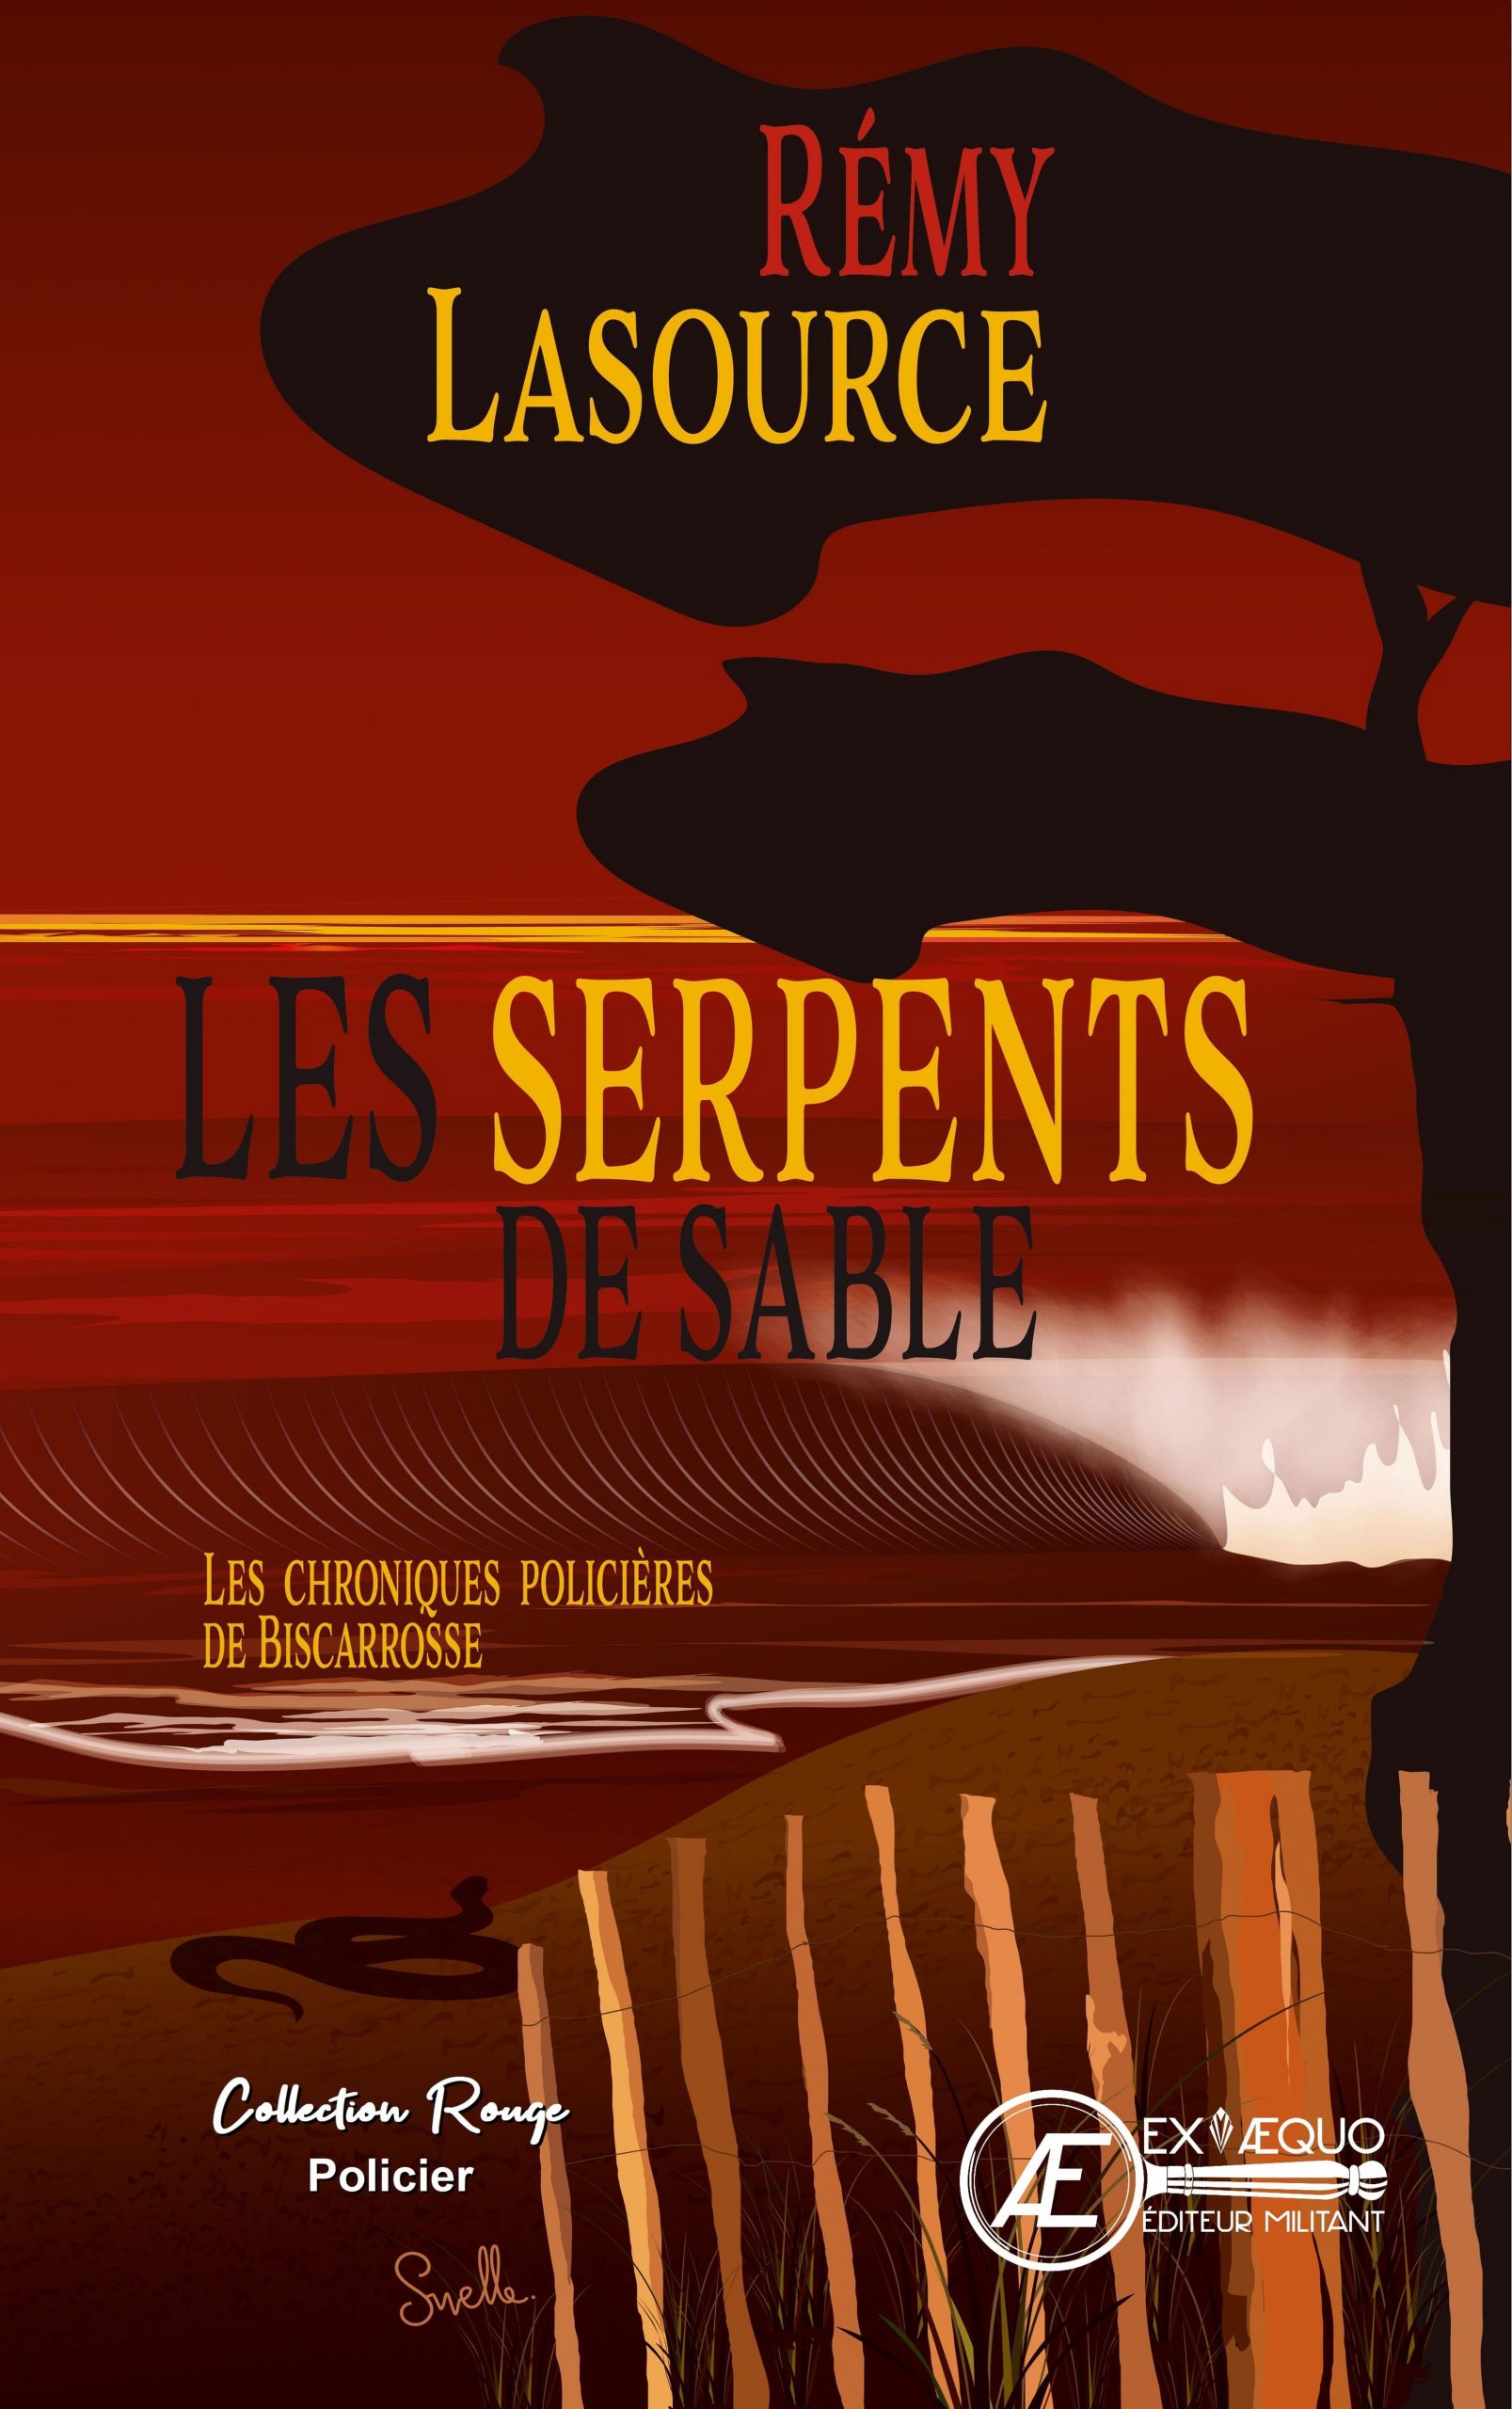 You are currently viewing Les serpents de sable – Les chroniques policières de Biscarrosse, de Rémy Lasource